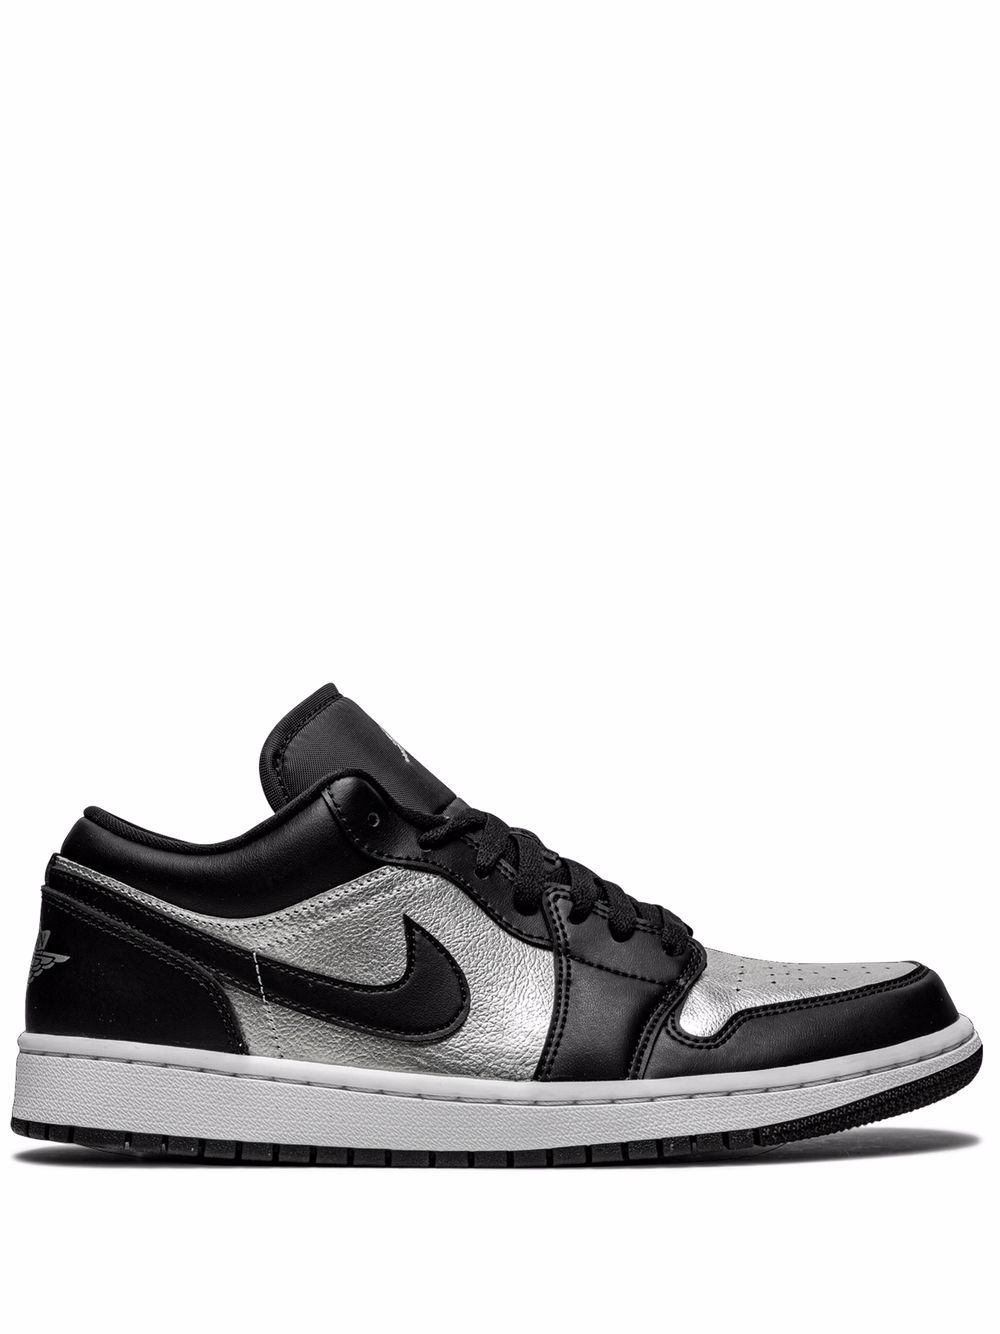 Jordan Air Jordan 1 Low SE "Silver Toe" sneakers - Black